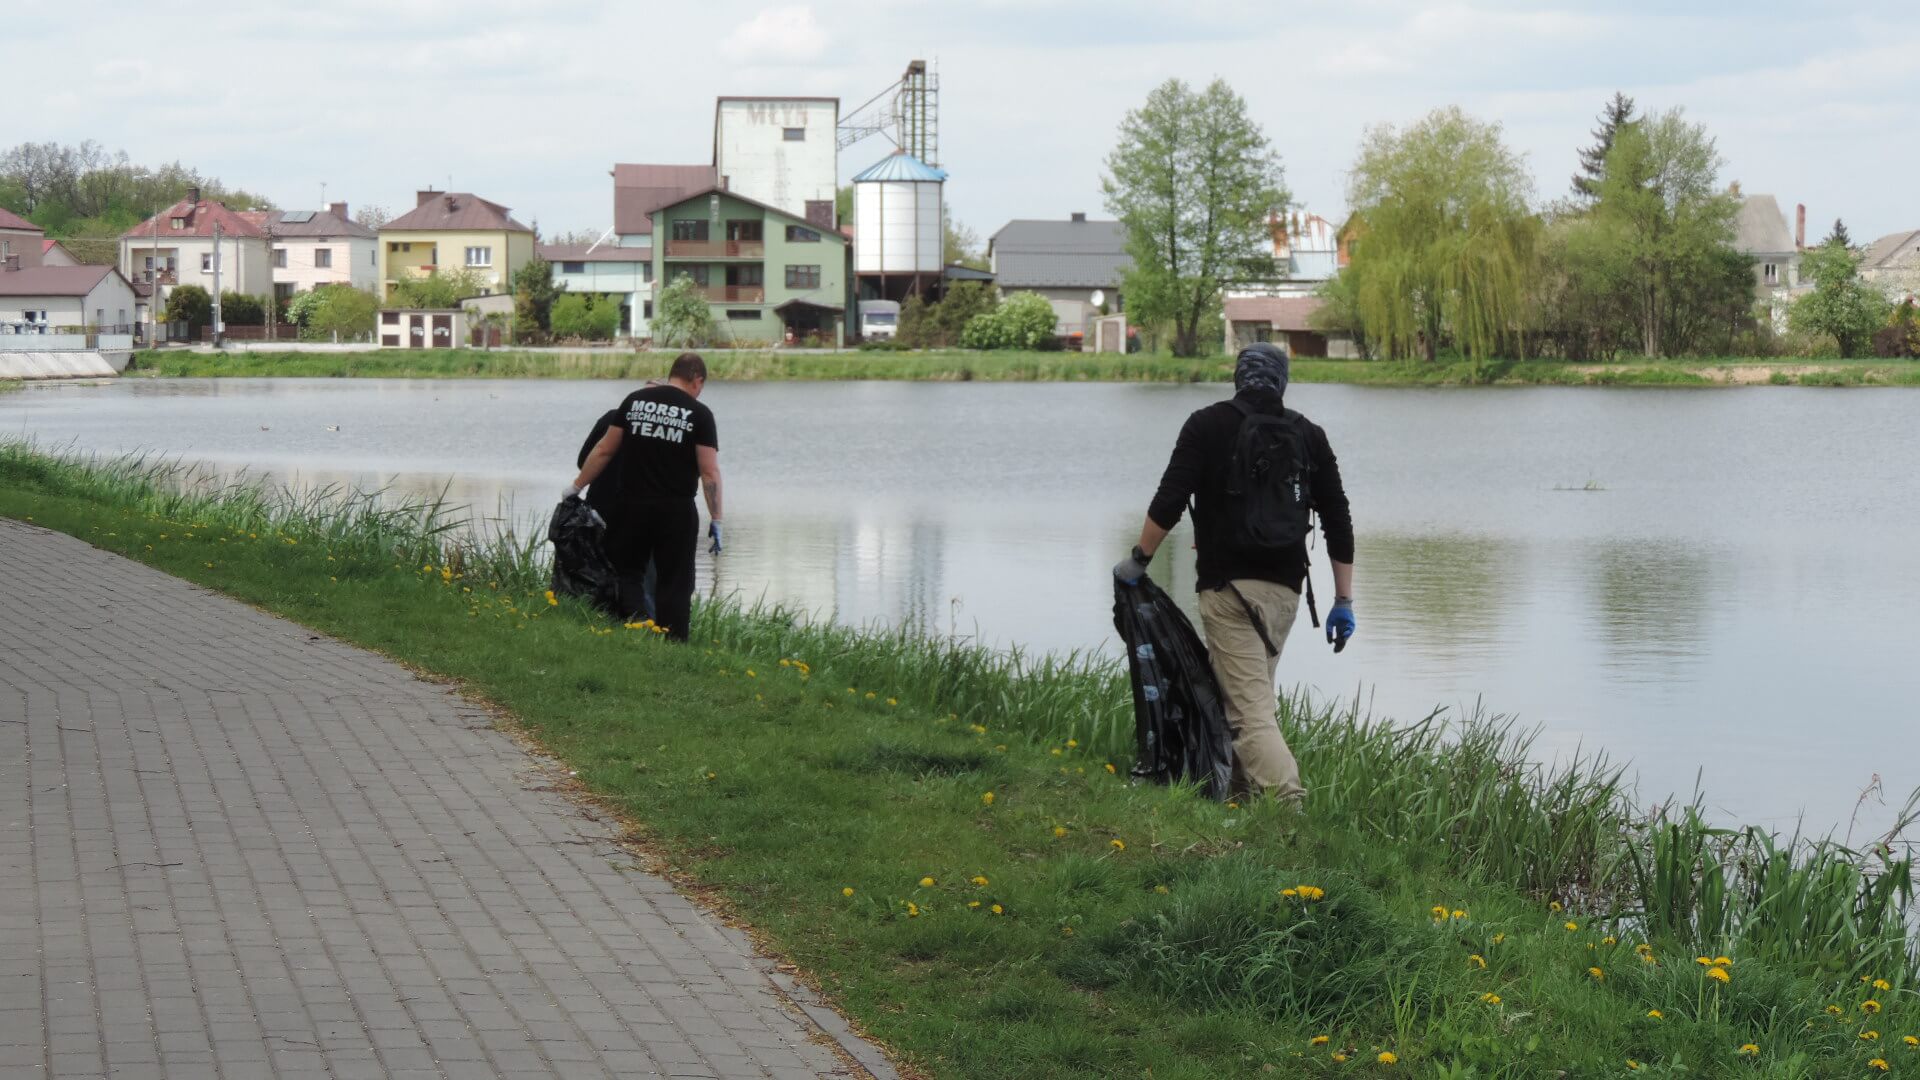 Sprzątanie brzegi rzeki Nurzec i zalewu w Ciechanowcu, 4.05.2019, fot. Adam Dąbrowski